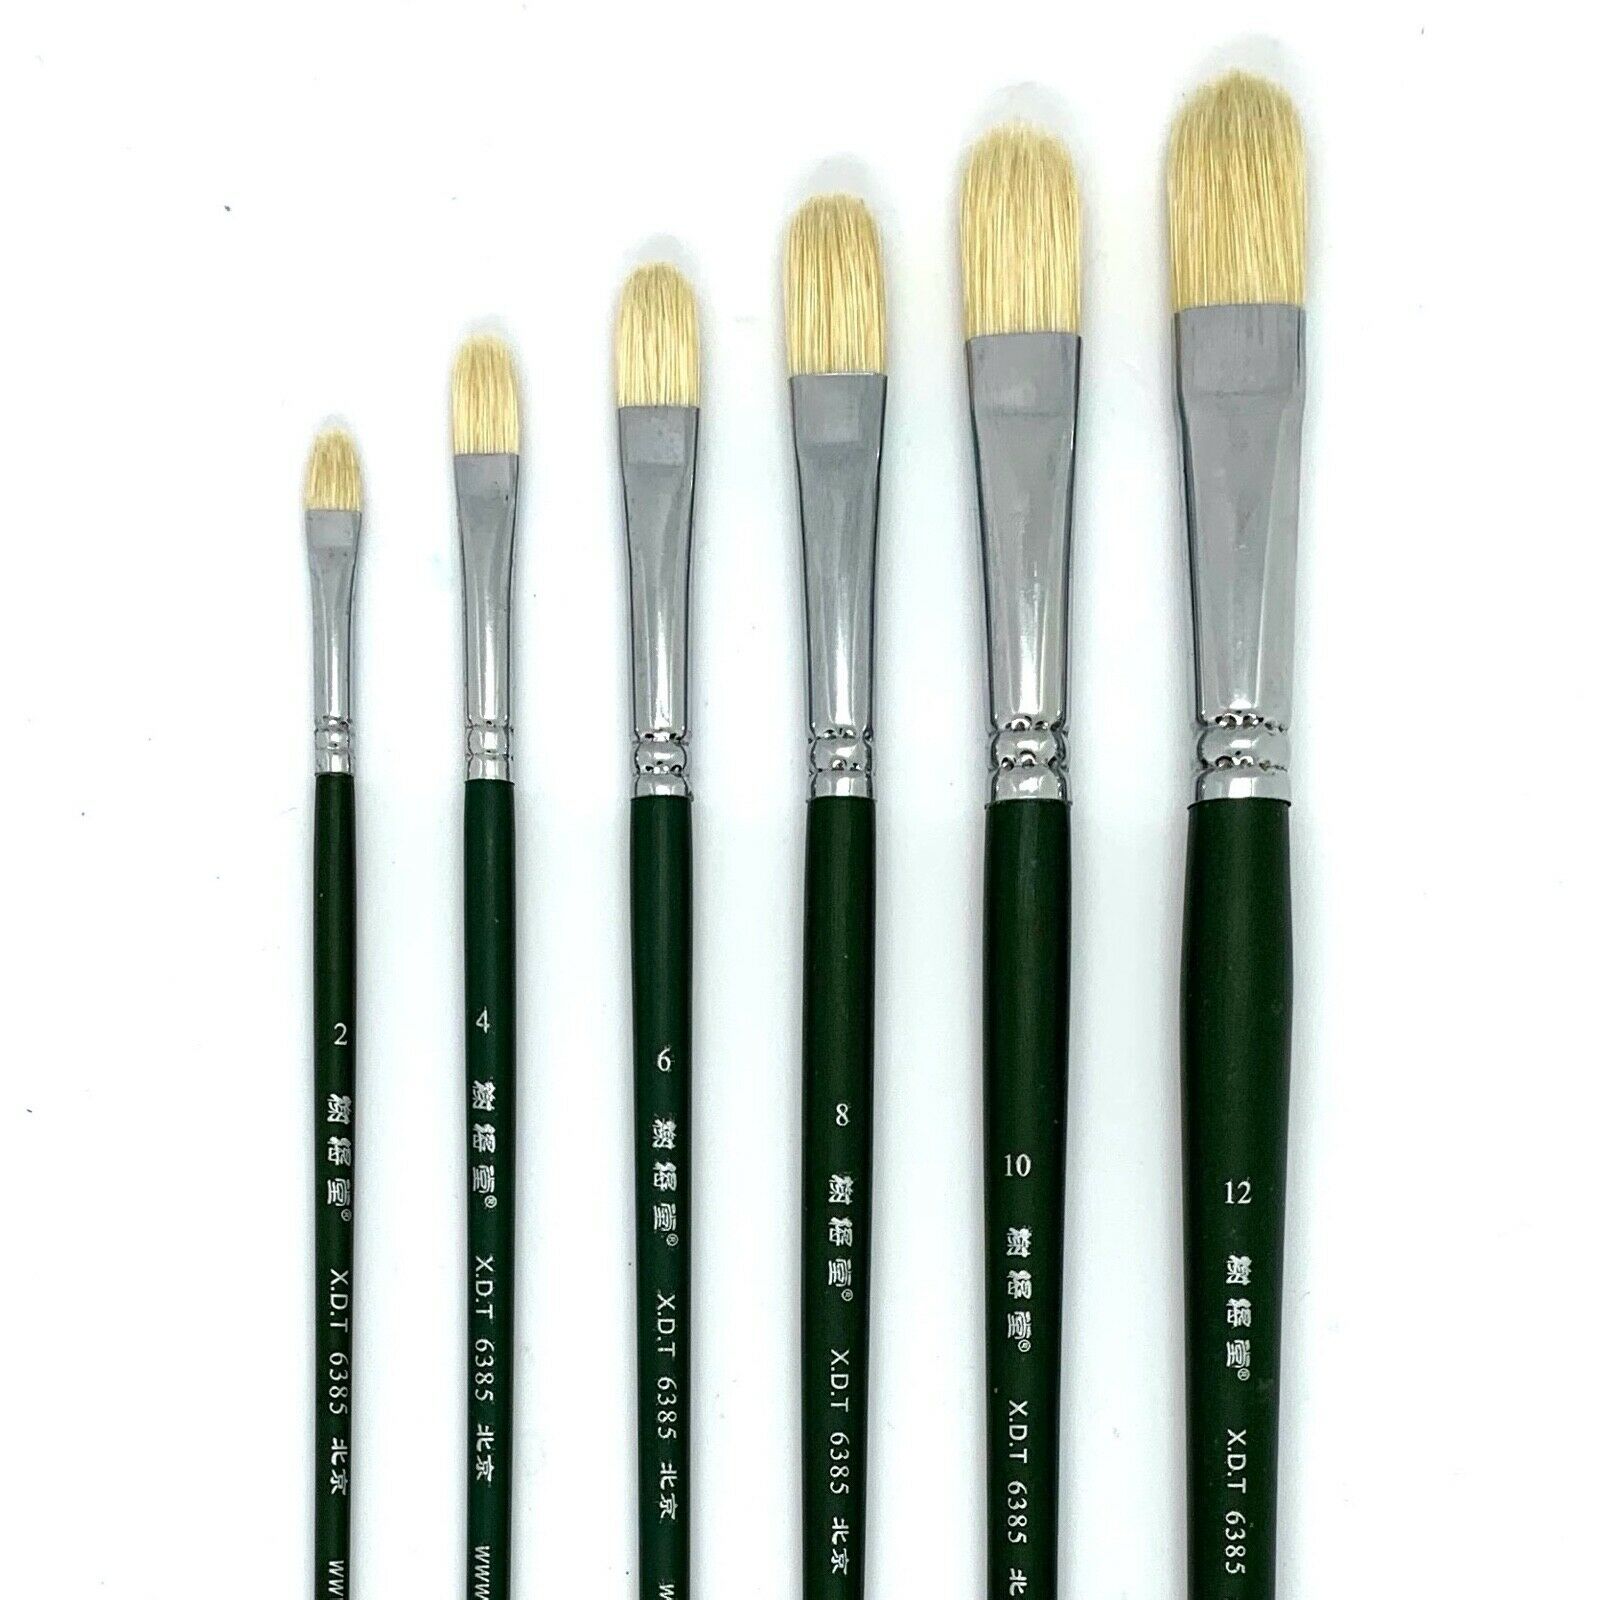 Xdt#6385 Filbert Artist Paint Brush Set 6 Pc Hog Bristle For Oil Acrylic Paint